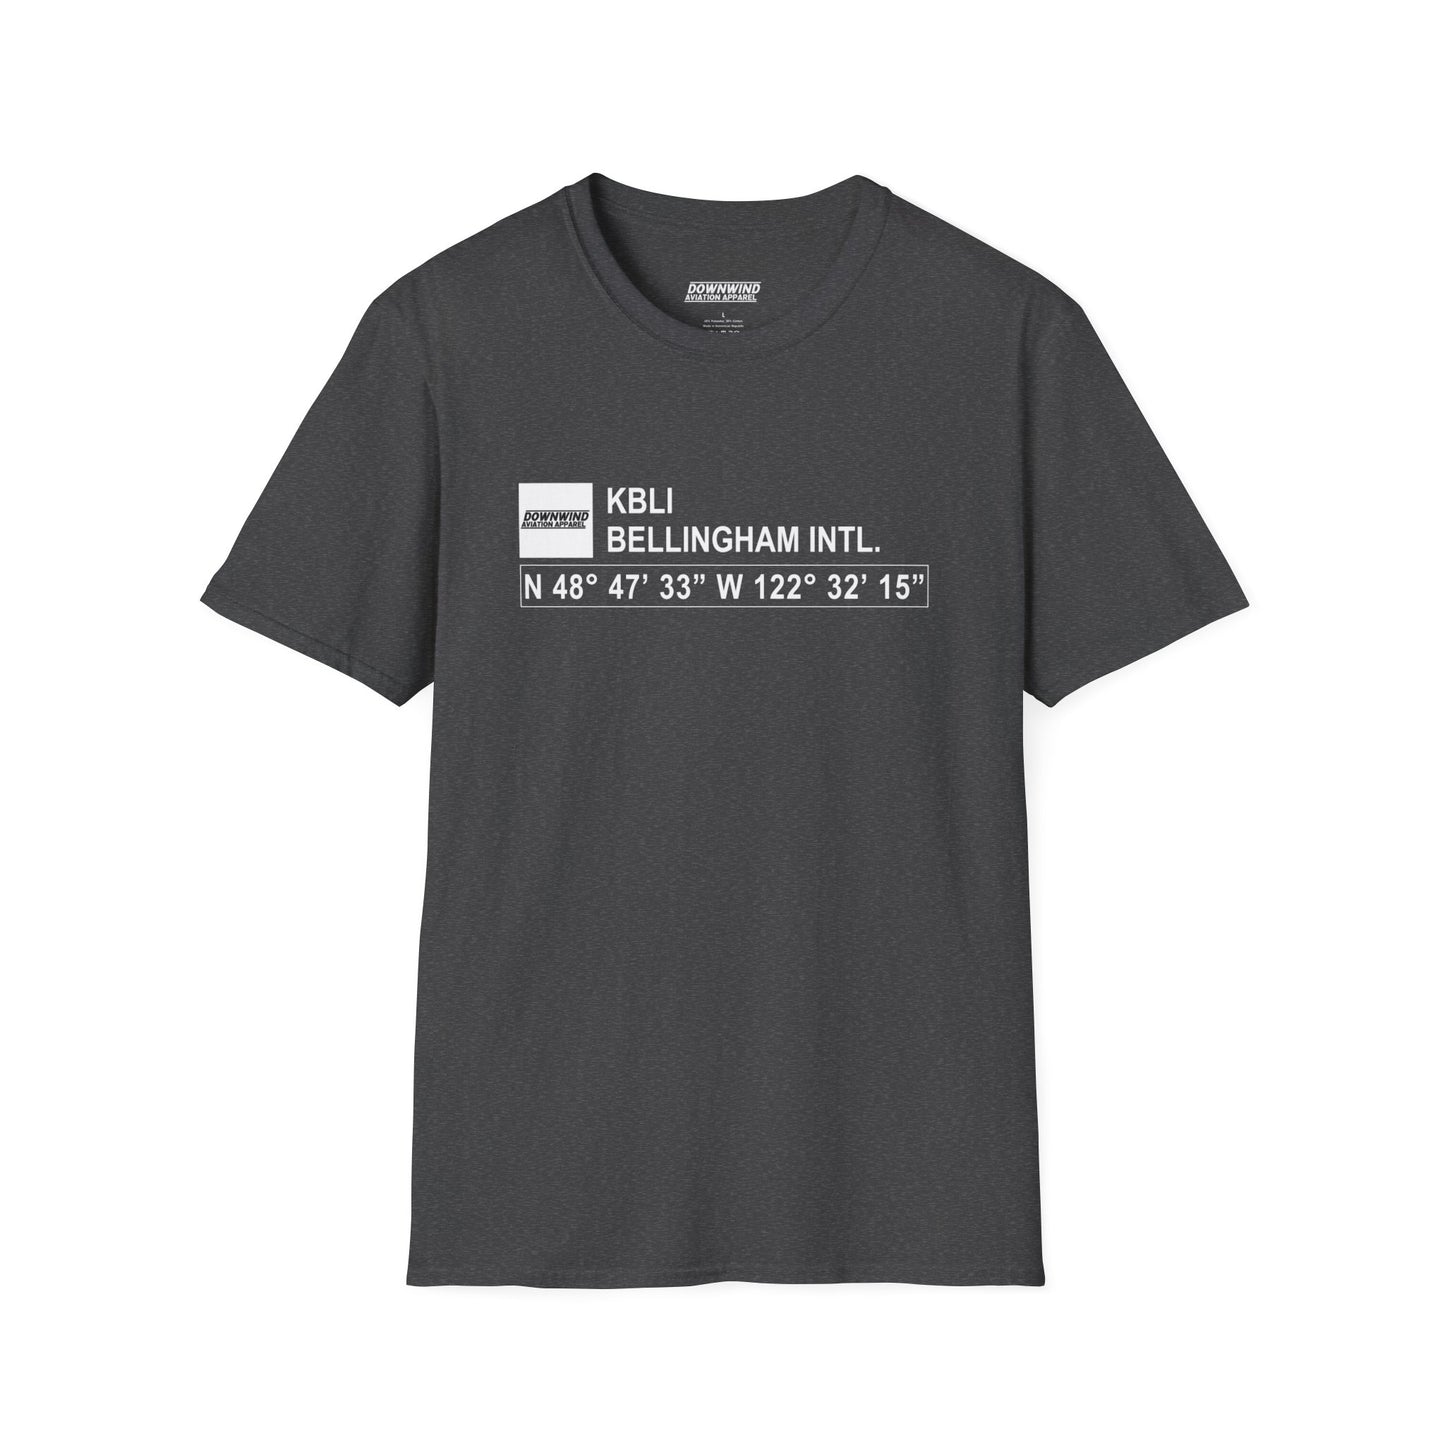 KBLI / Bellingham Intl. T-Shirt